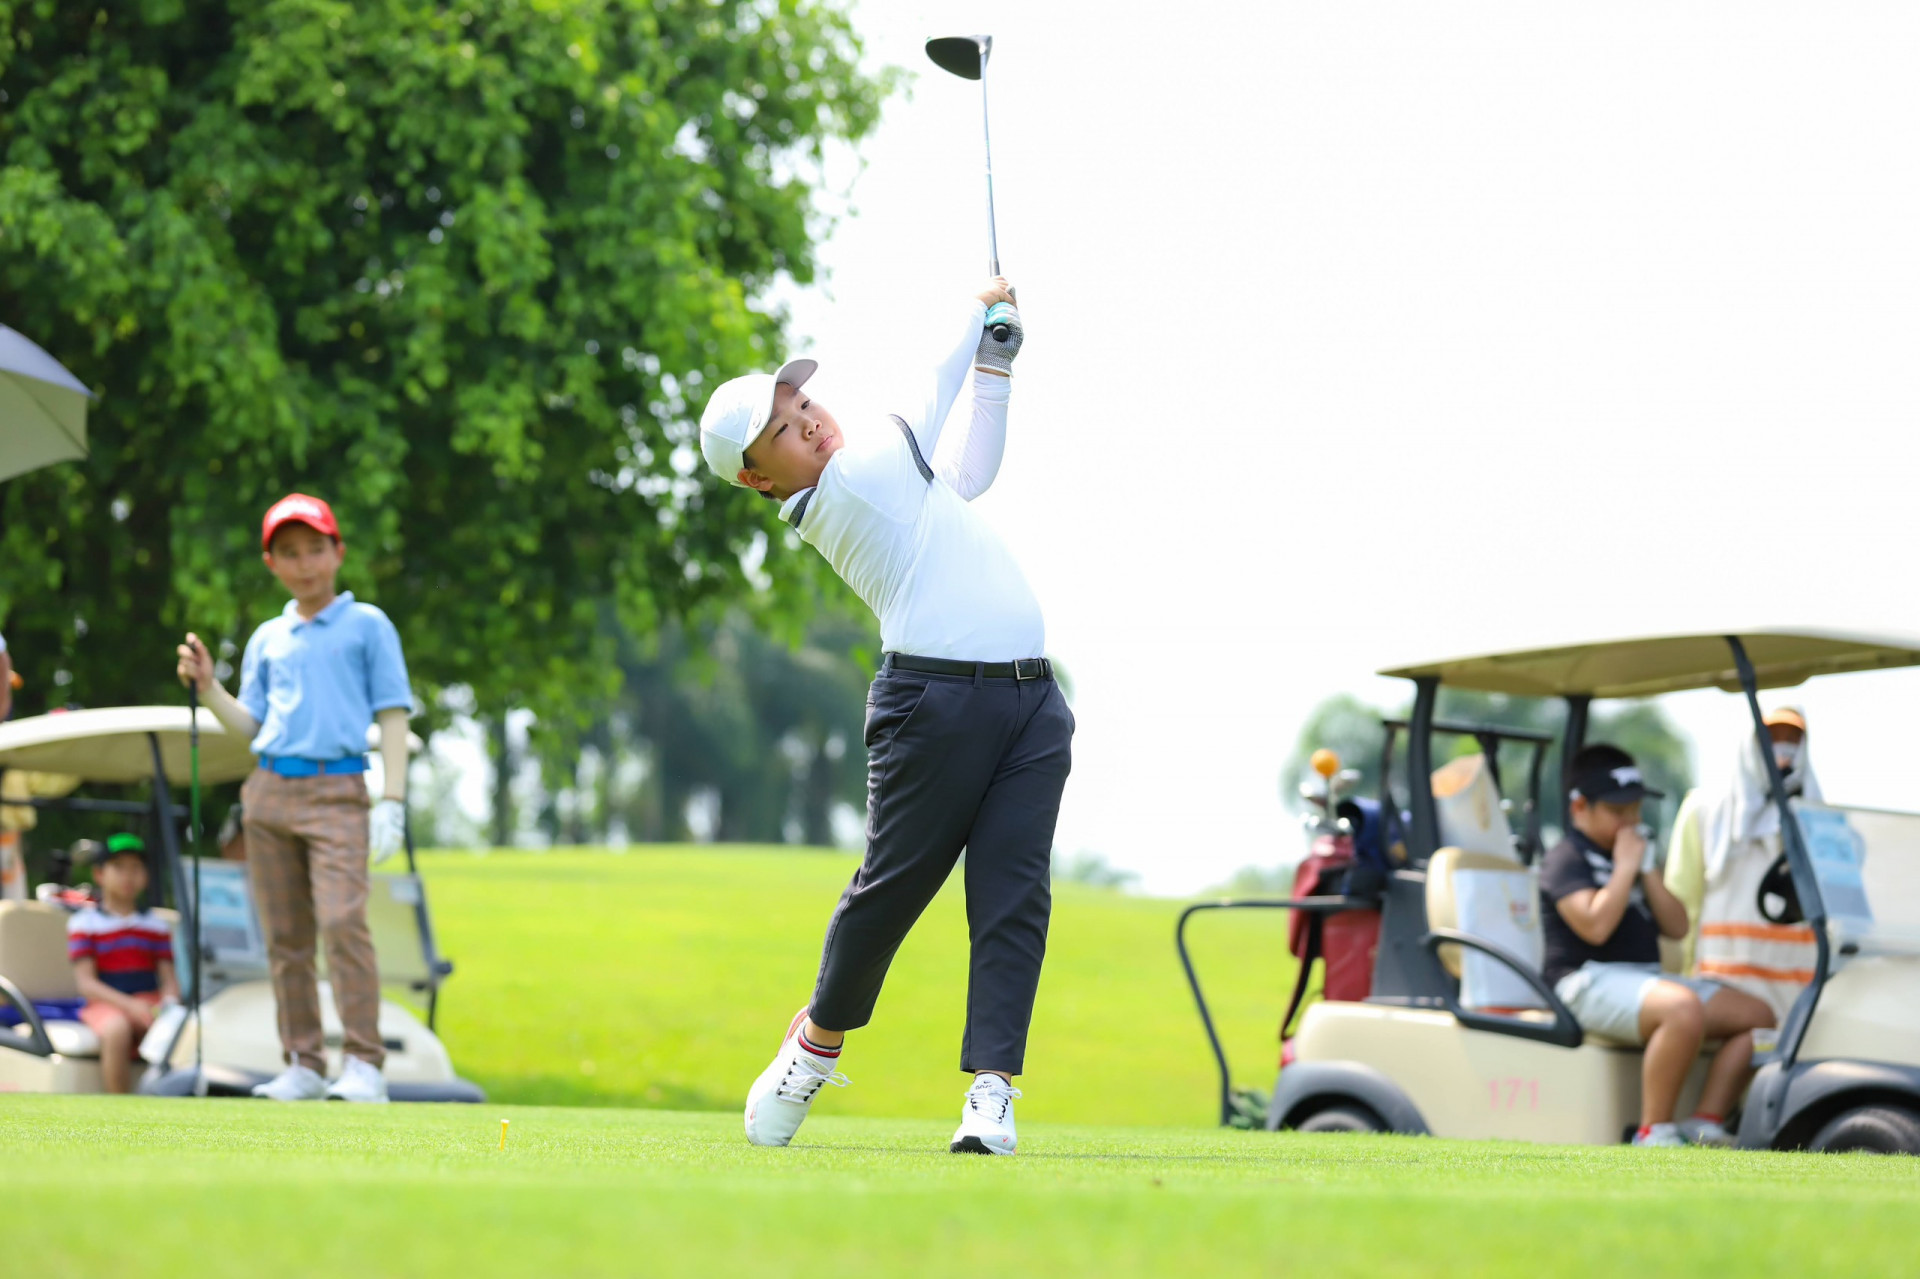 Golfer tài năng trẻ của Hội Golf Nha Trang - Khánh Hòa. (Ảnh nhân vật cung cấp)
